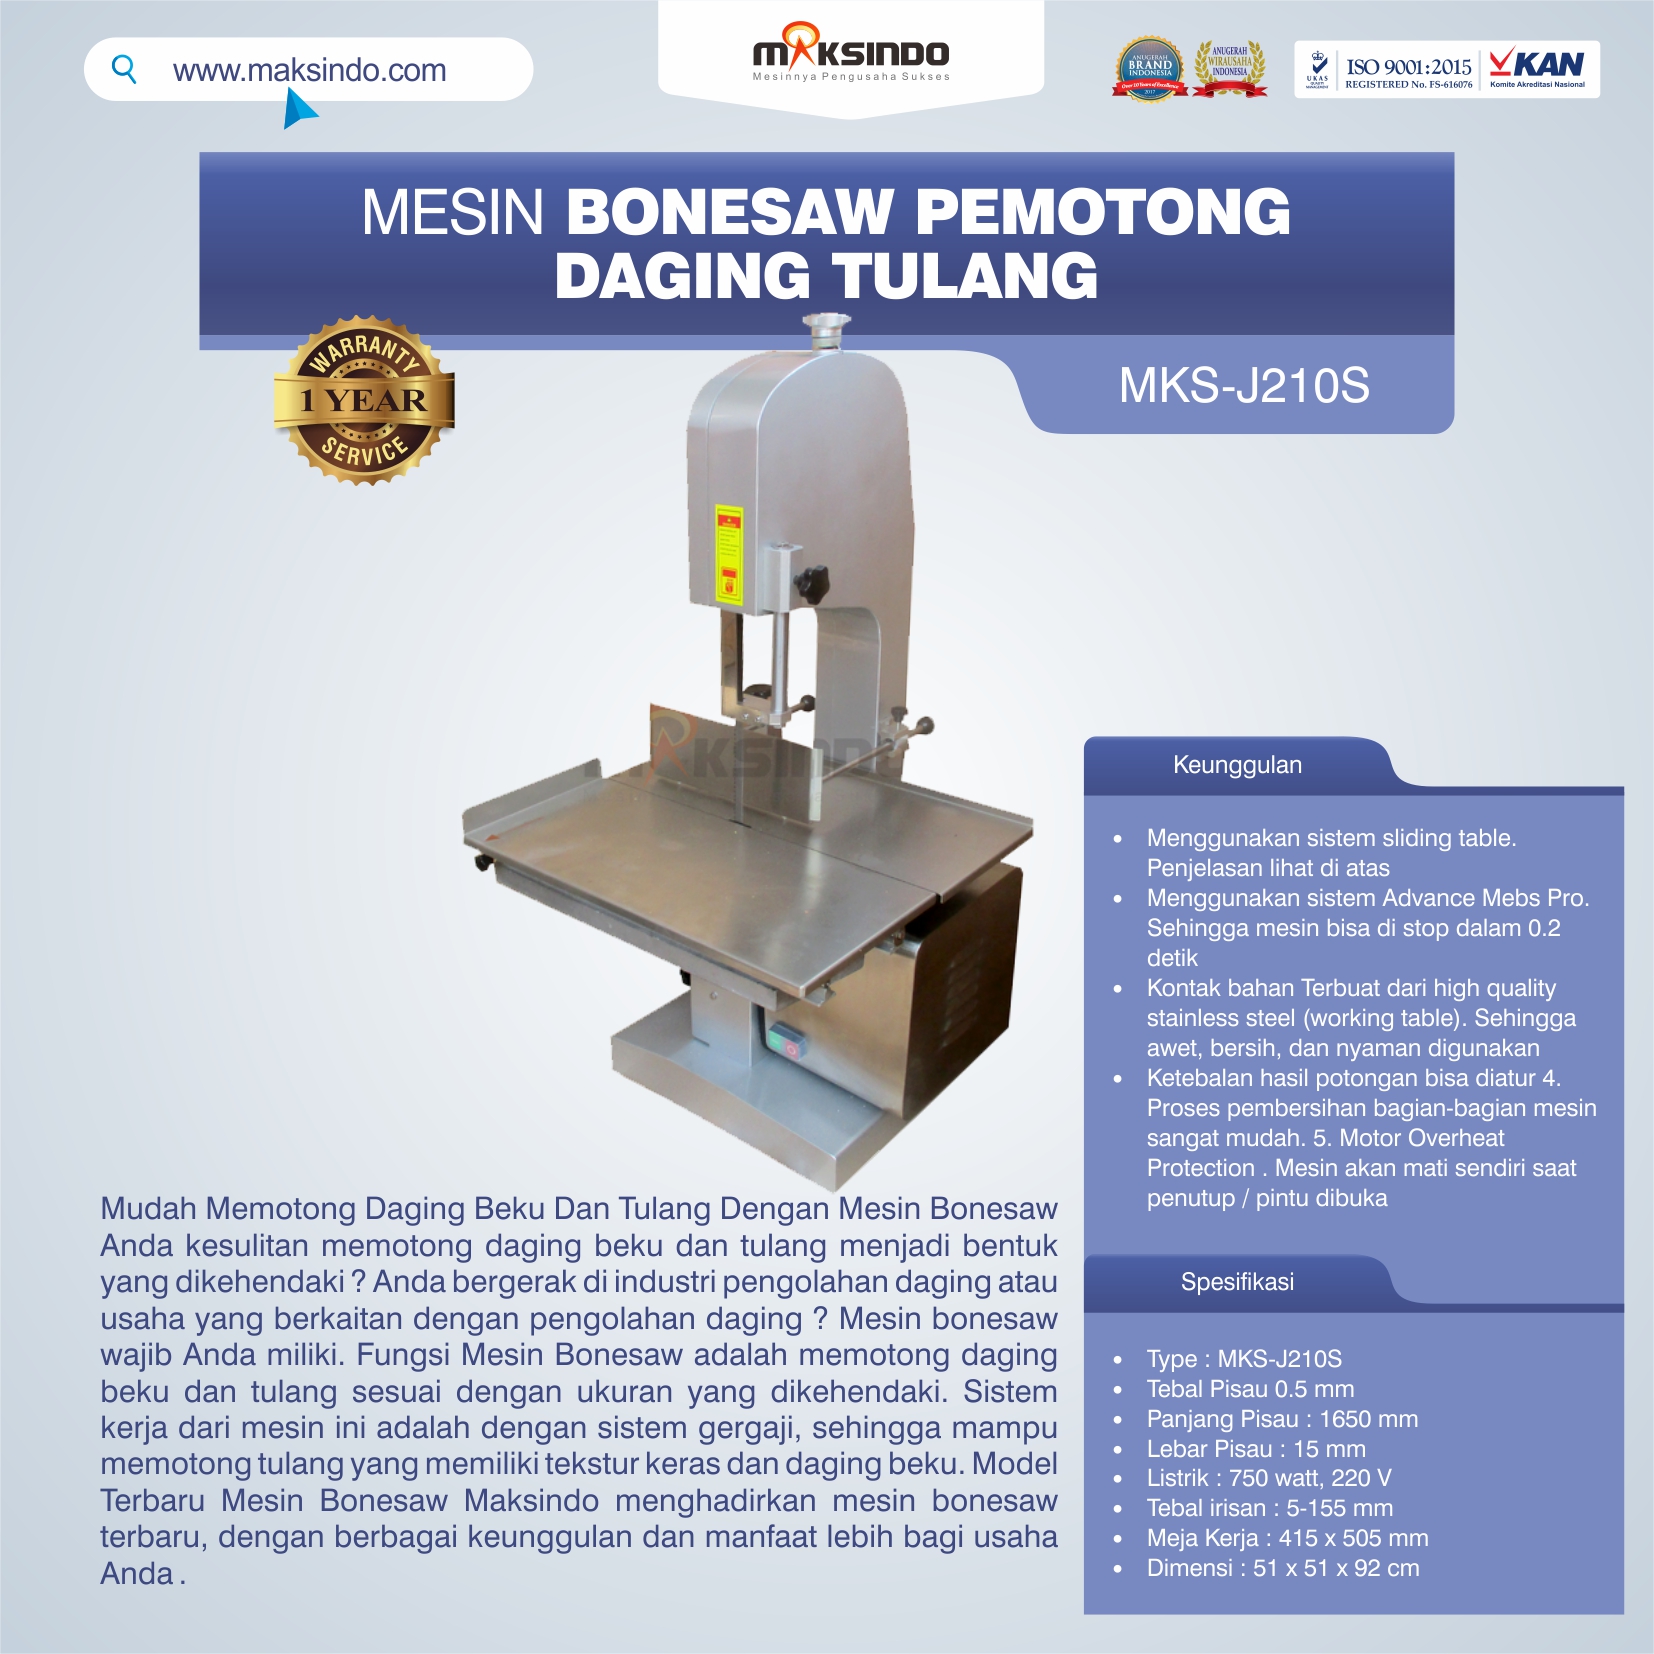 Jual Mesin Bonesaw Pemotong Daging Tulang (MKS-J210S) di Yogyakarta